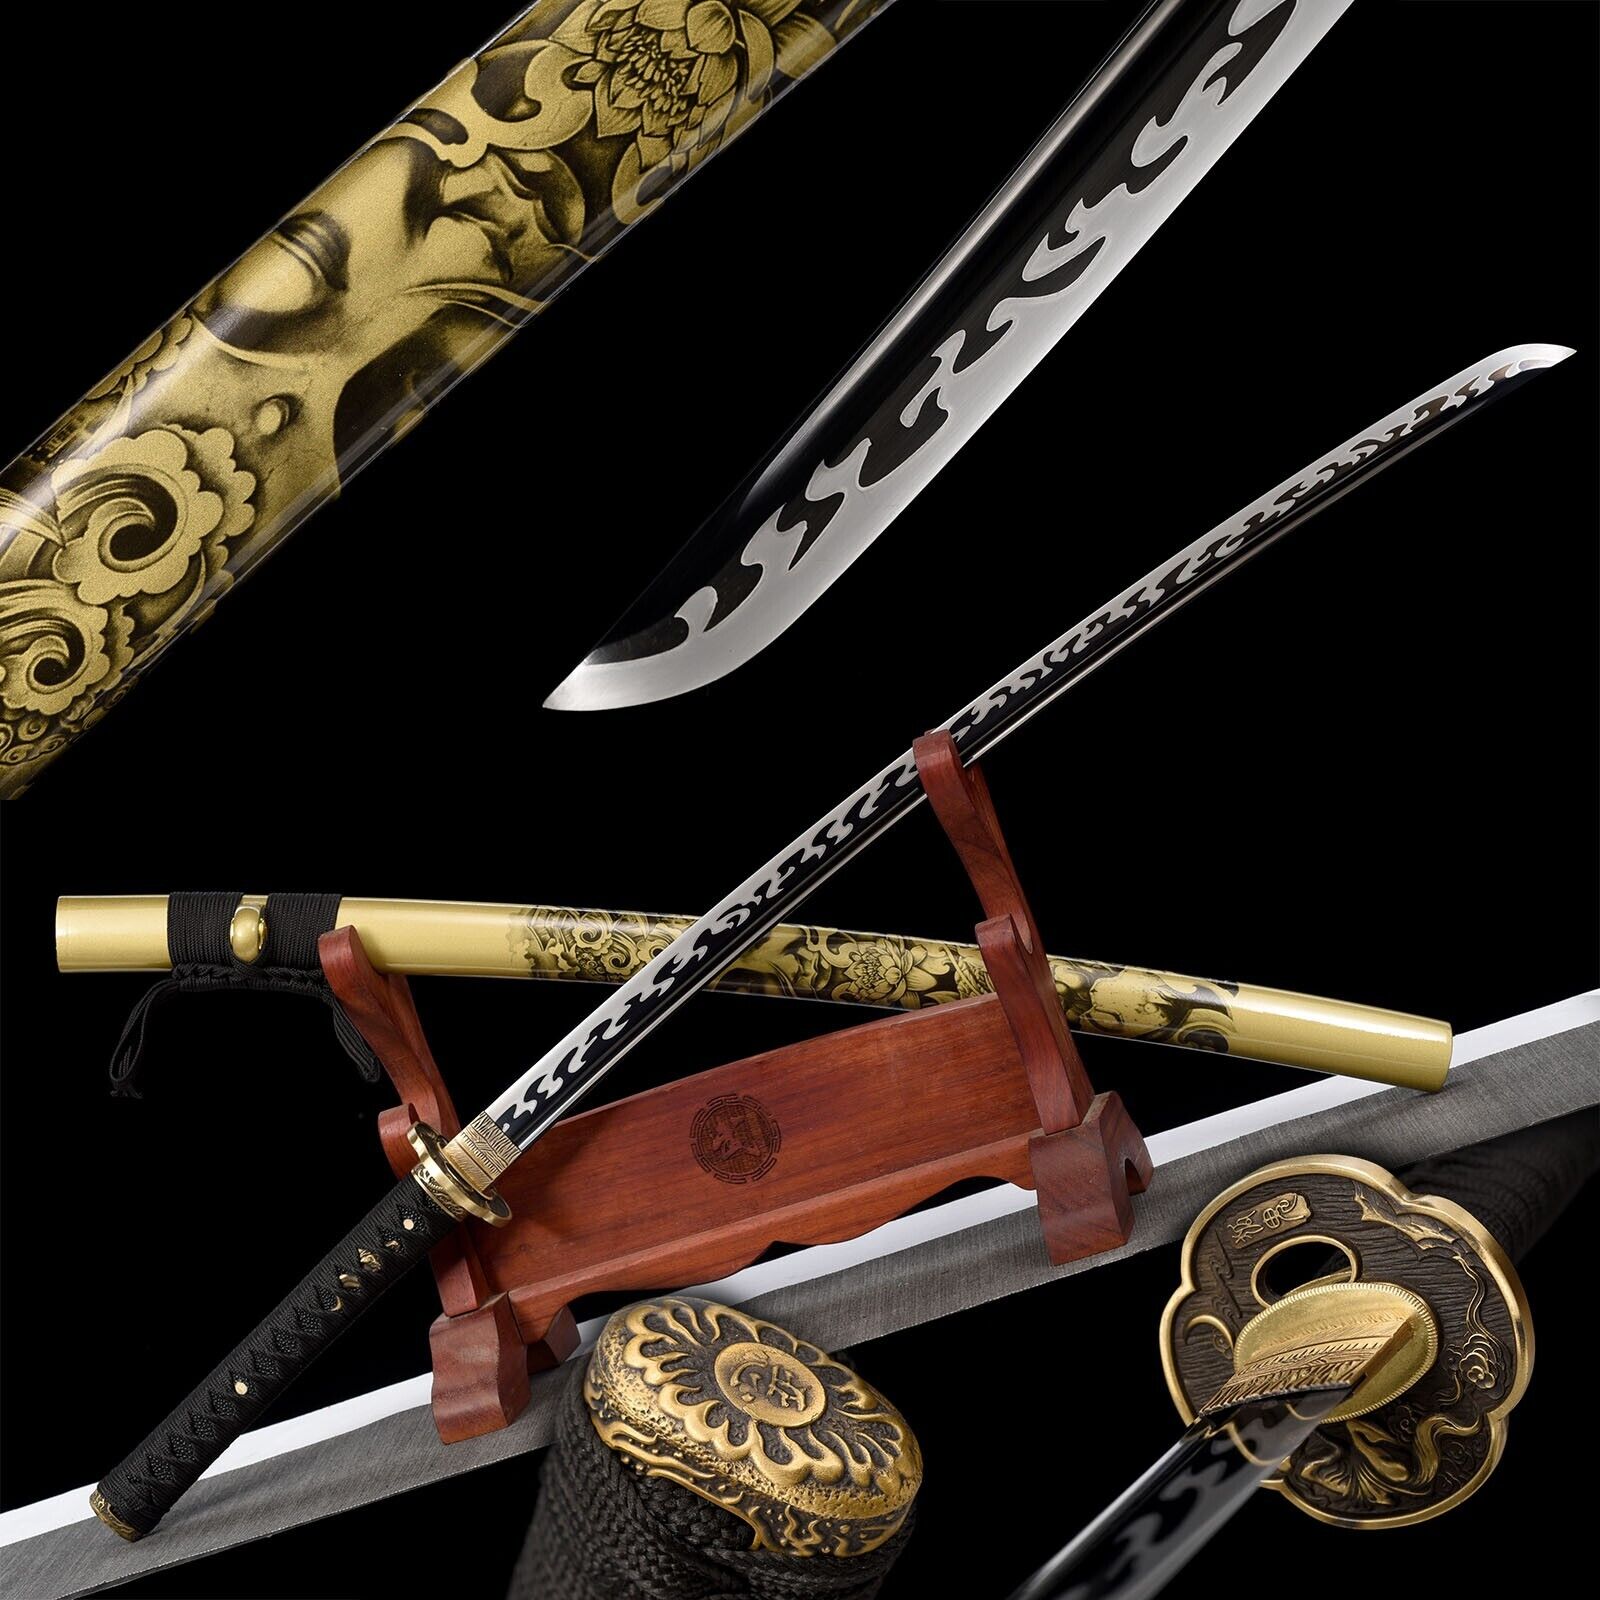 40''Black Katana 1095 High carbon Steel Japanese Samurai Handmade sharp Sword